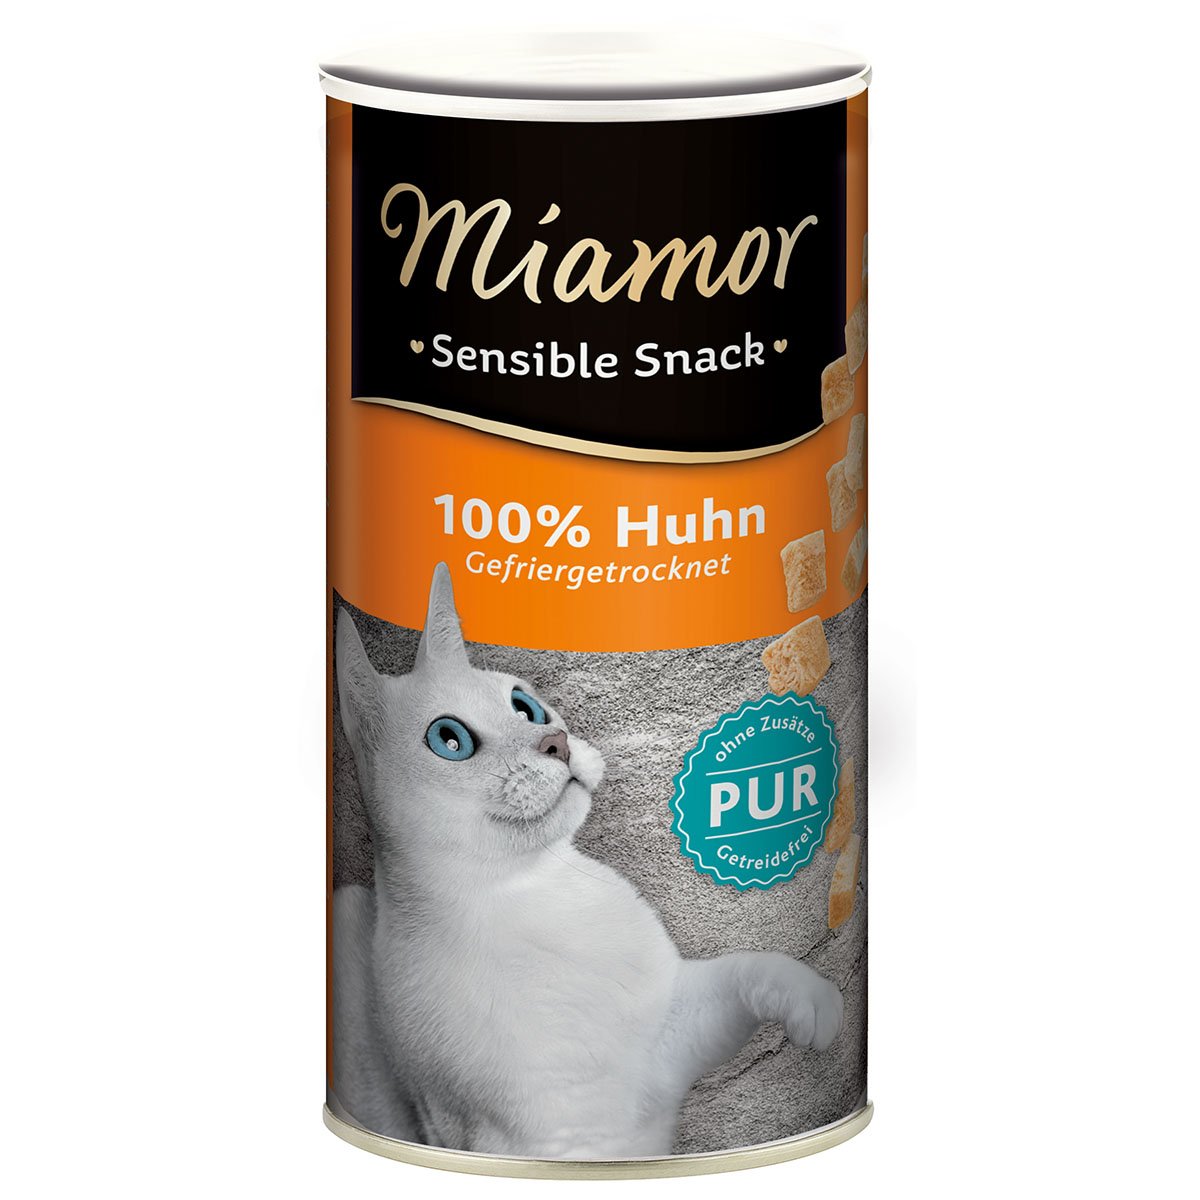 Miamor Sensible Snack Huhn Pur 12x30g von Miamor